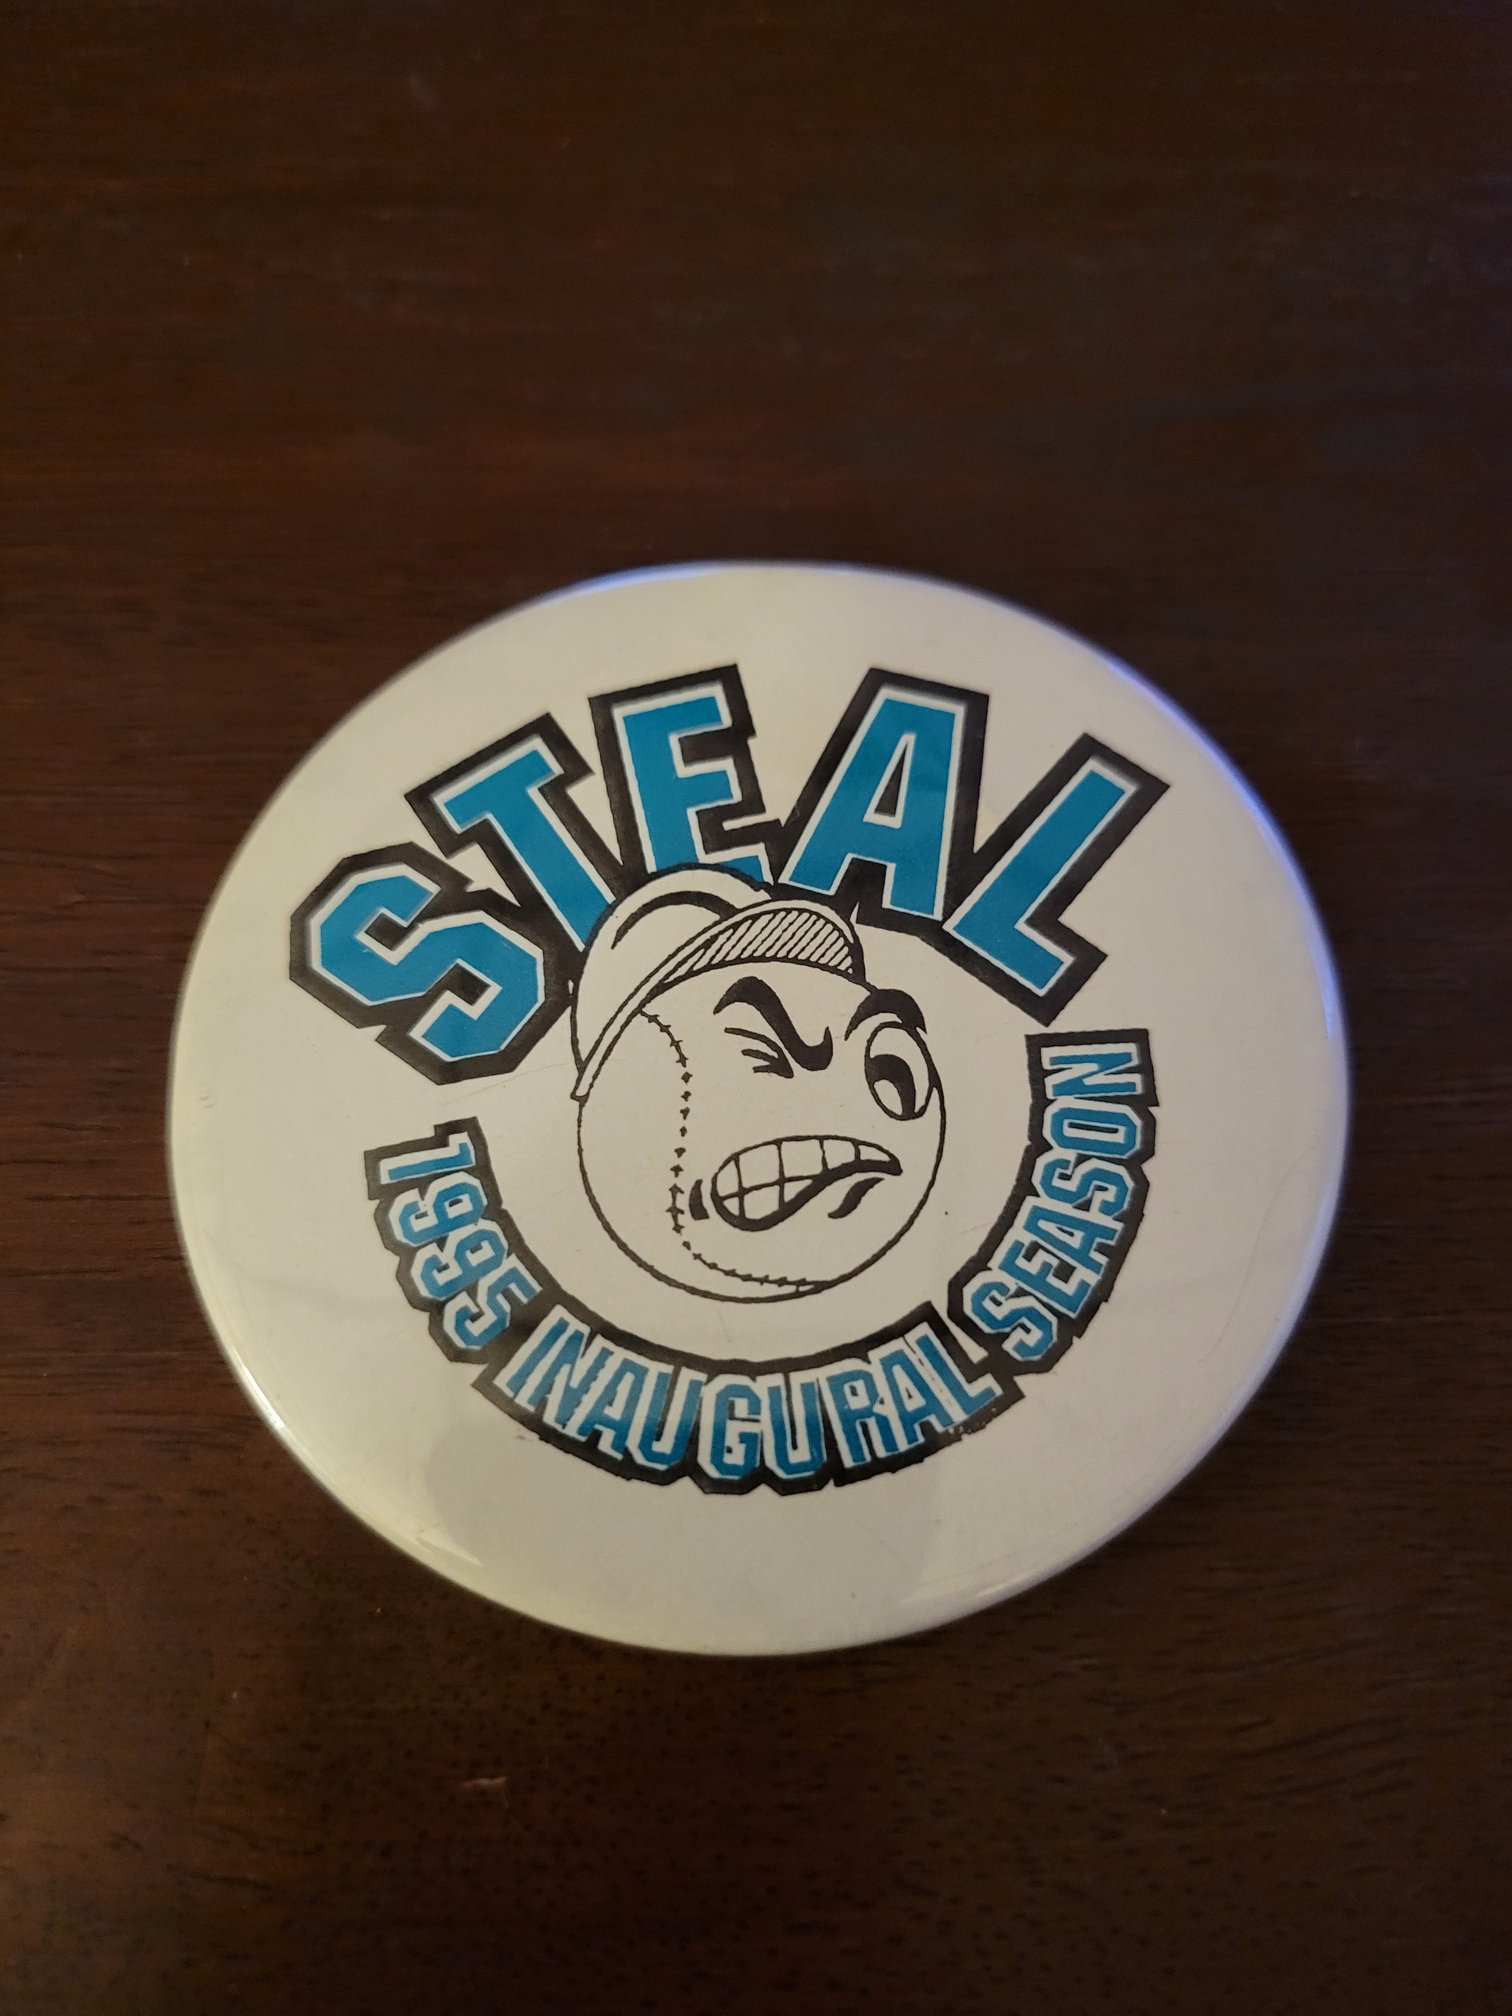 Johnstown Steal 1995 Inaugural Season Button